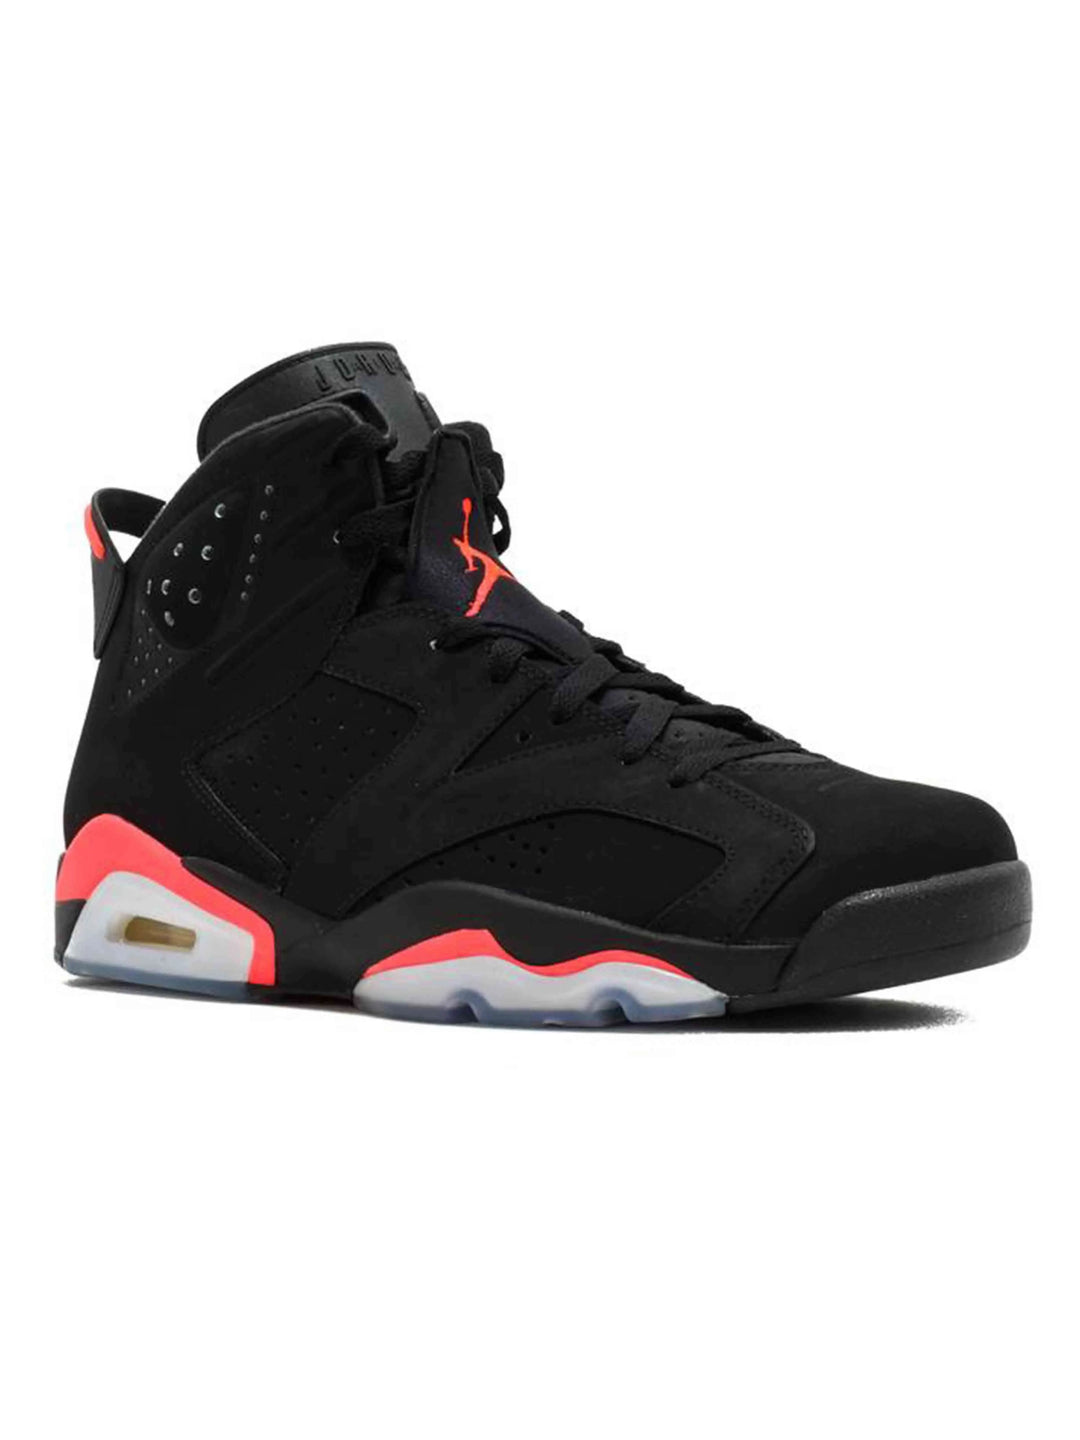 Nike Air Jordan 6 Retro Black Infrared [2014] Jordan Brand